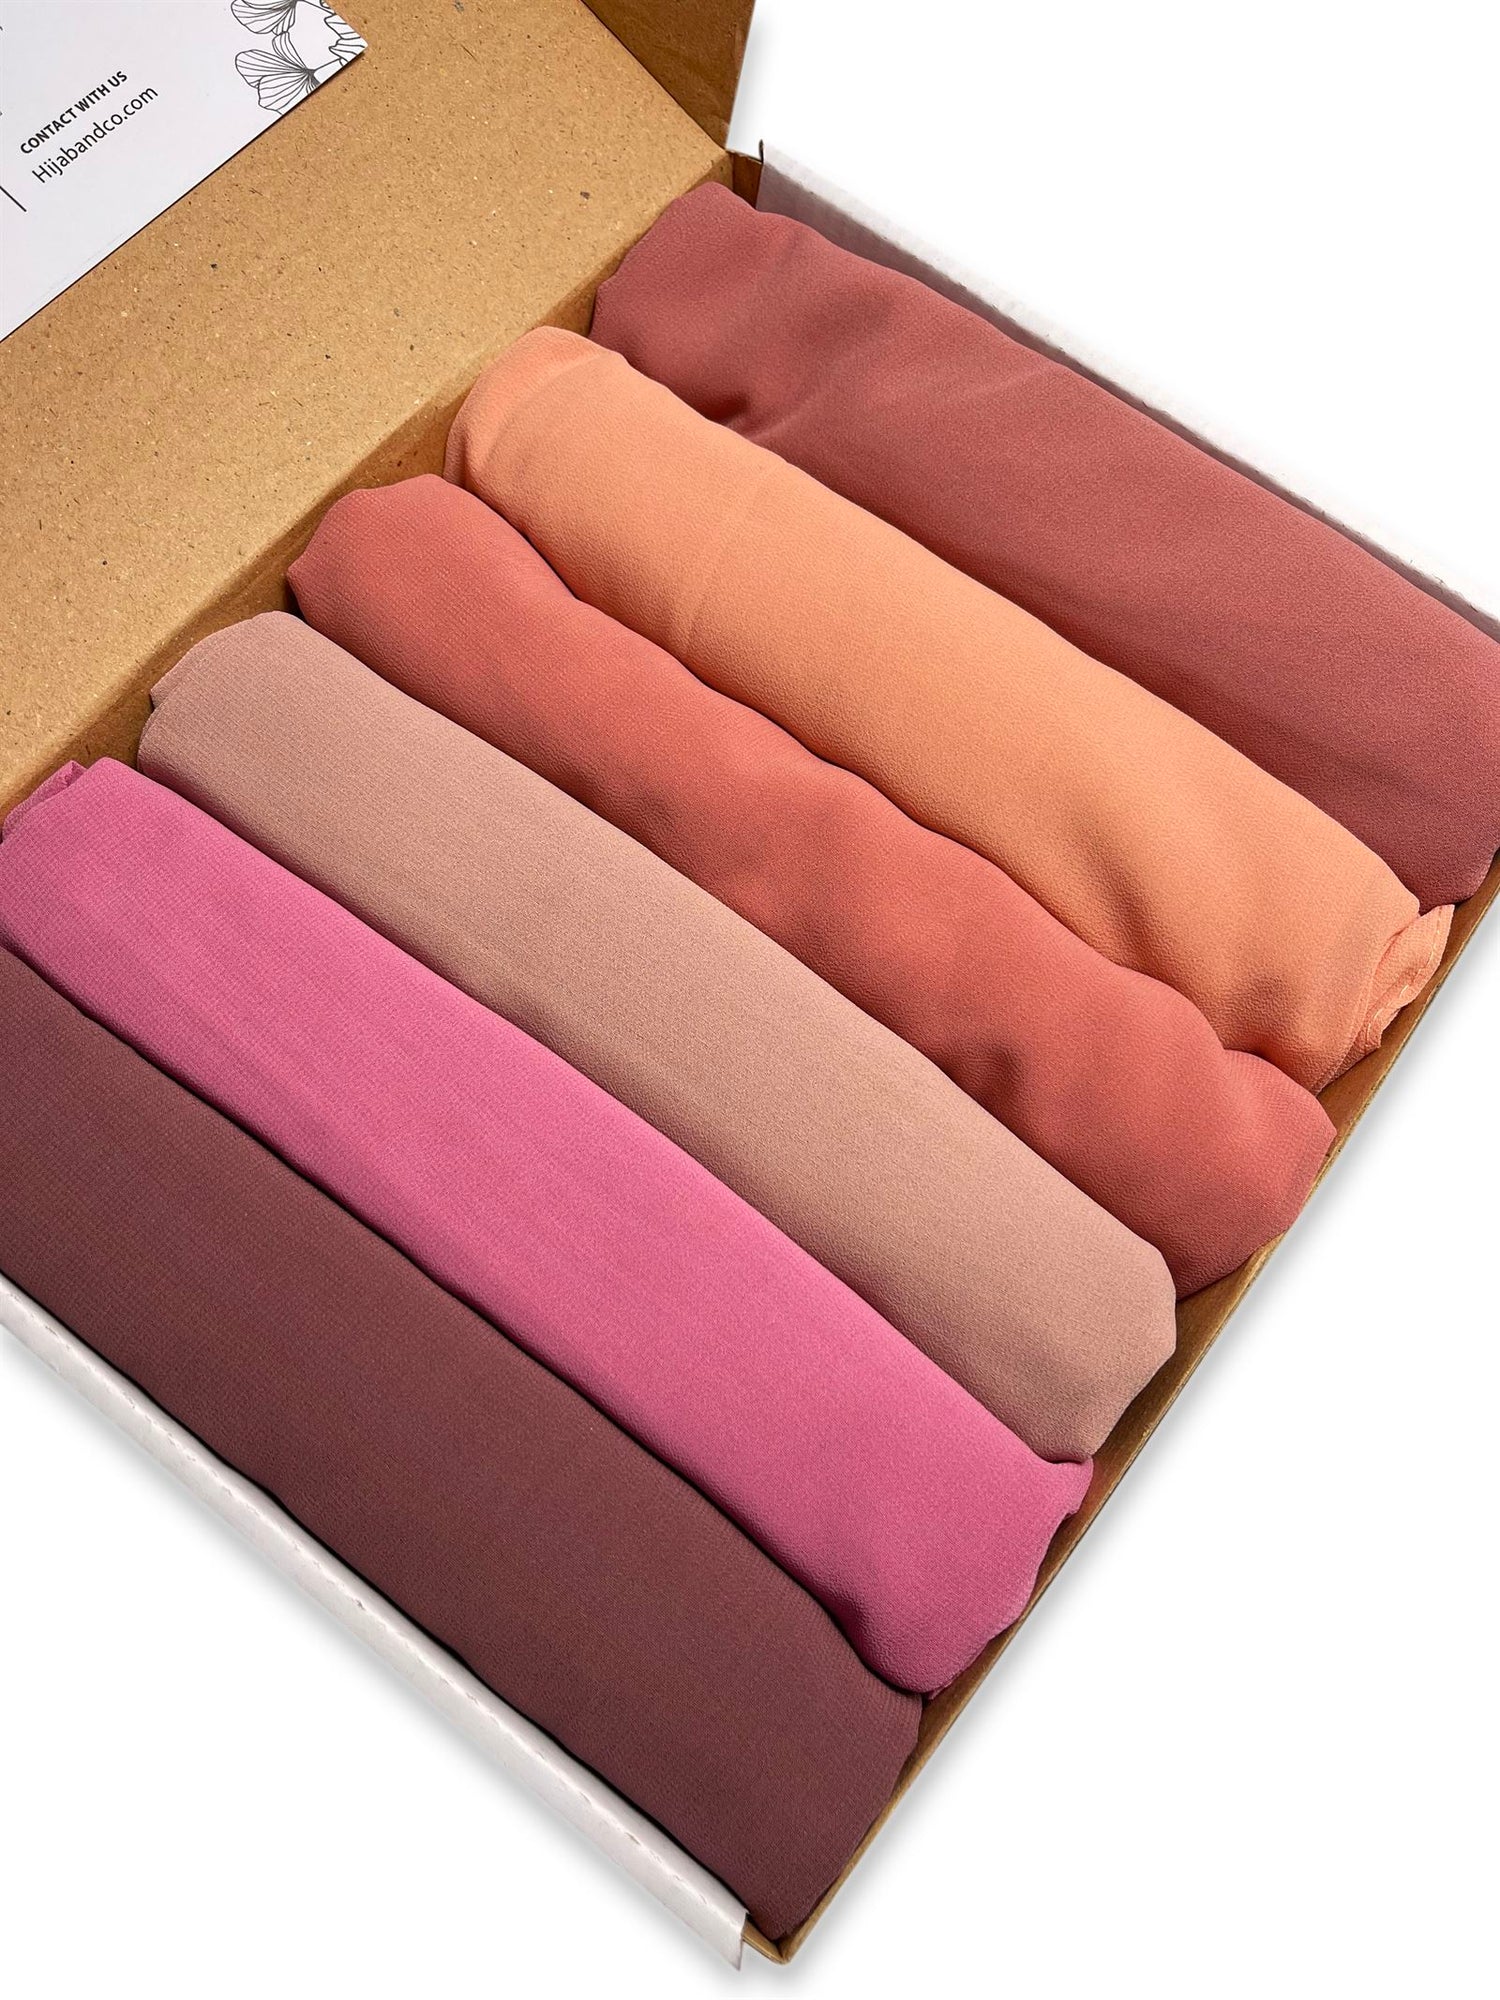 6 Georgette Hijab Box - Pink Plum